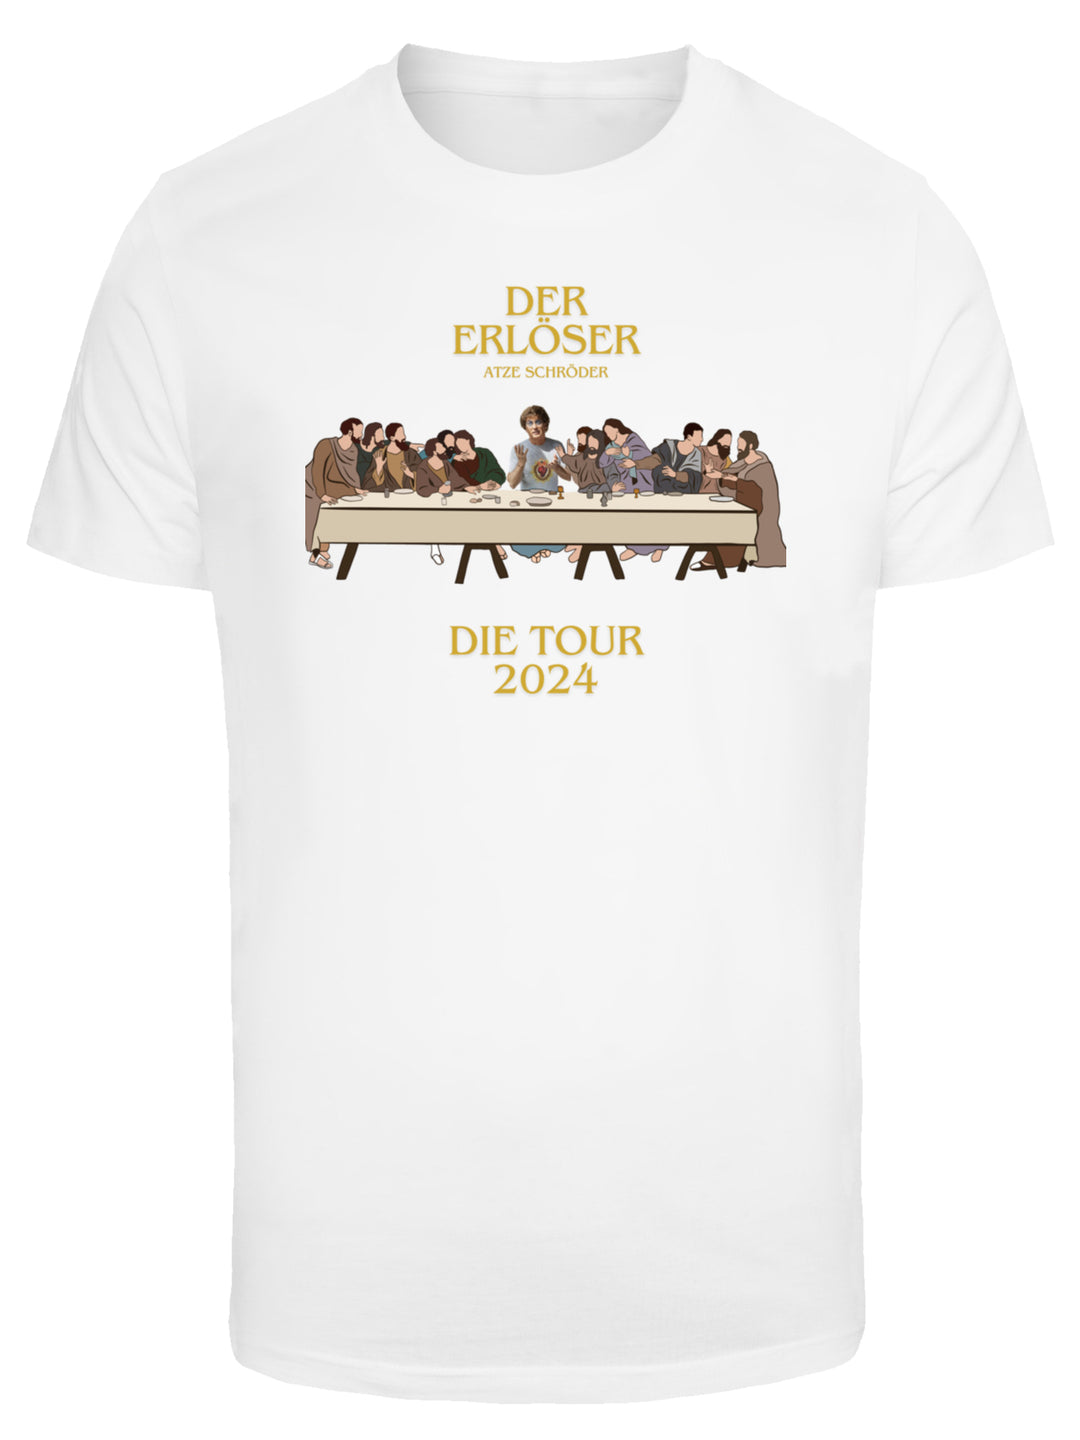 Der Erlöser - Die Tour 2024 and Atze with T-Shirt Round Neck